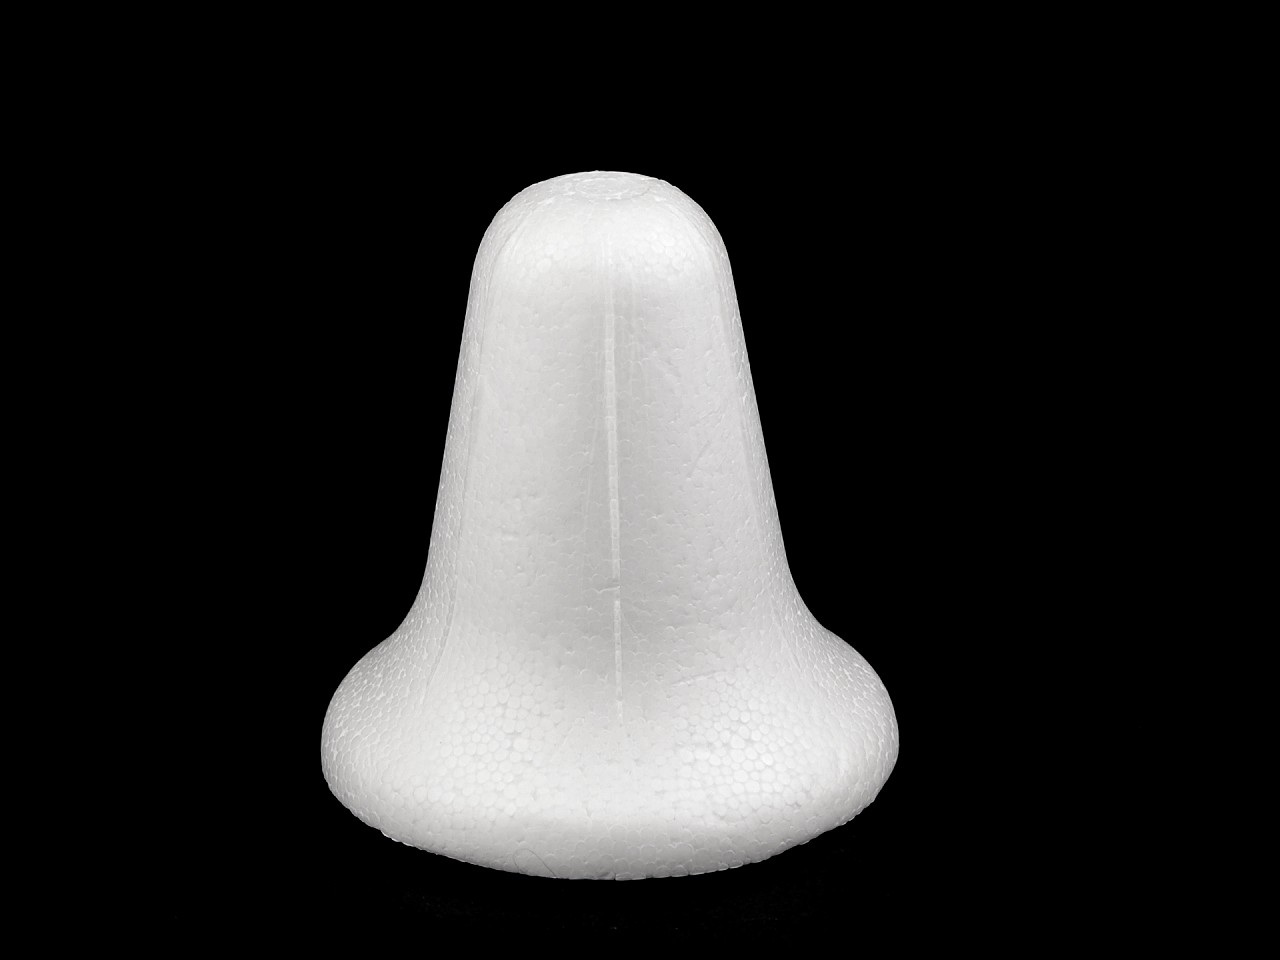 Zvonek 9x9 cm polystyren 3D, barva bílá